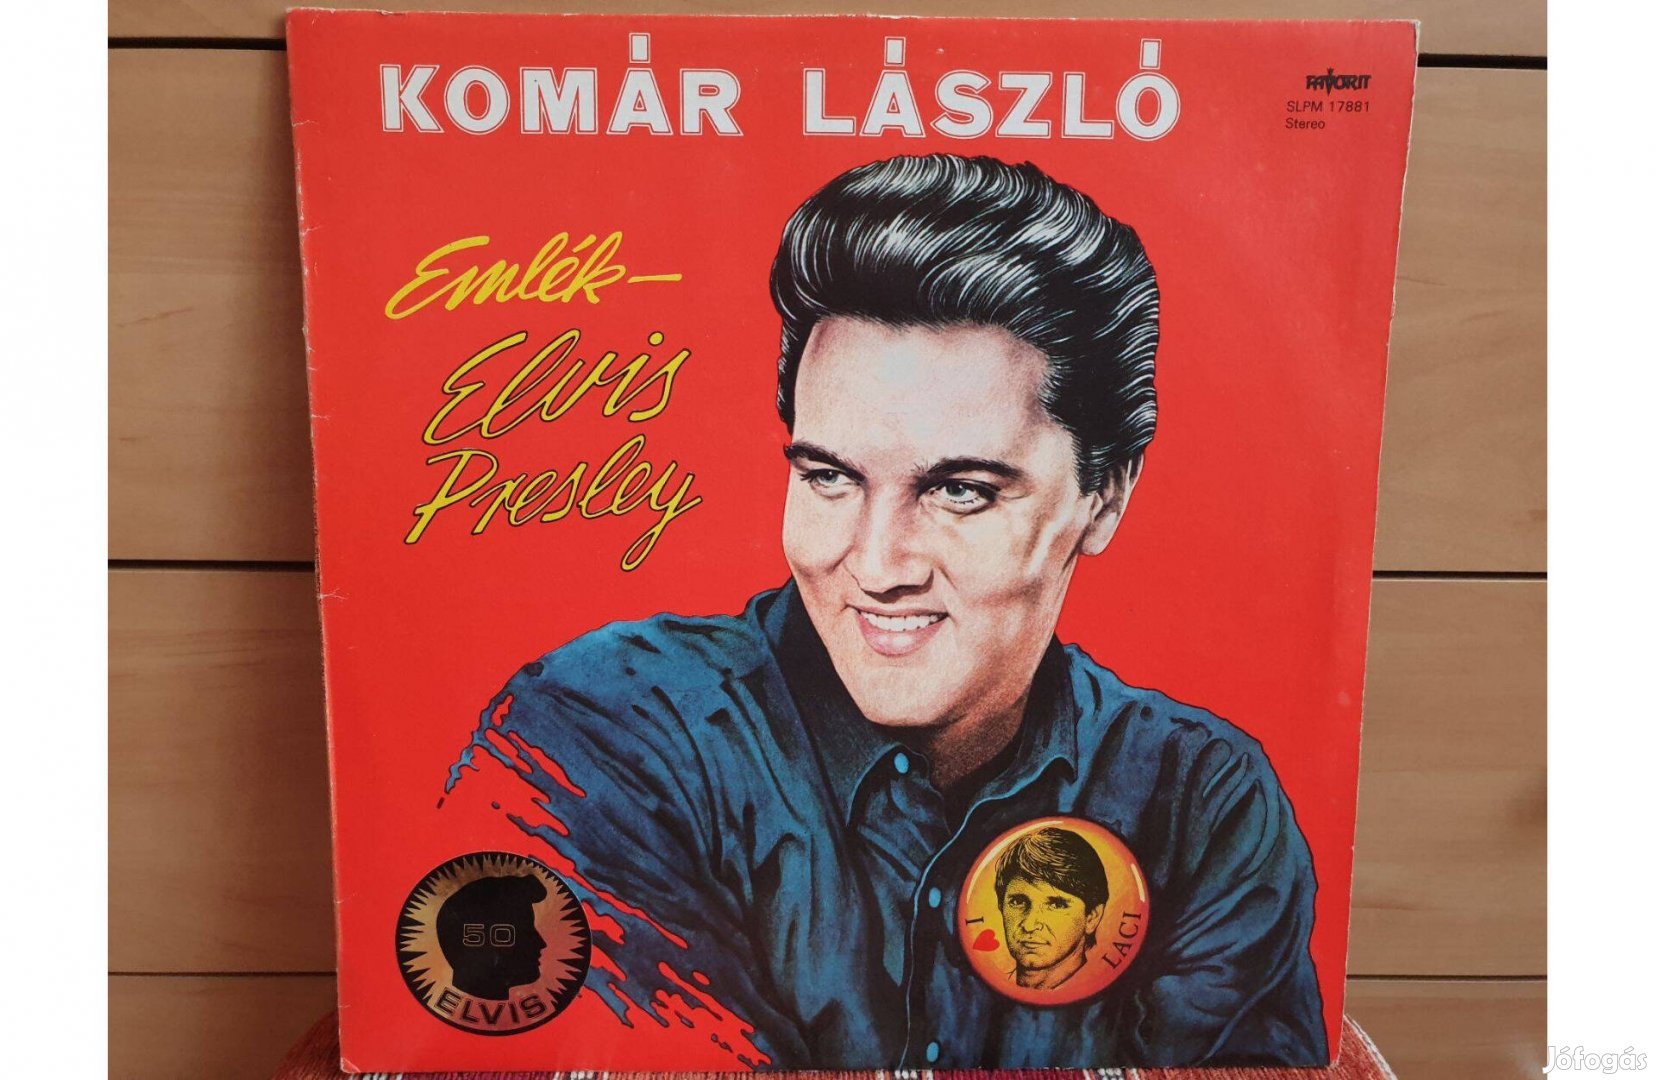 Komár László - Emlék Elvis Presley 1 hanglemez bakelit lemez Vinyl